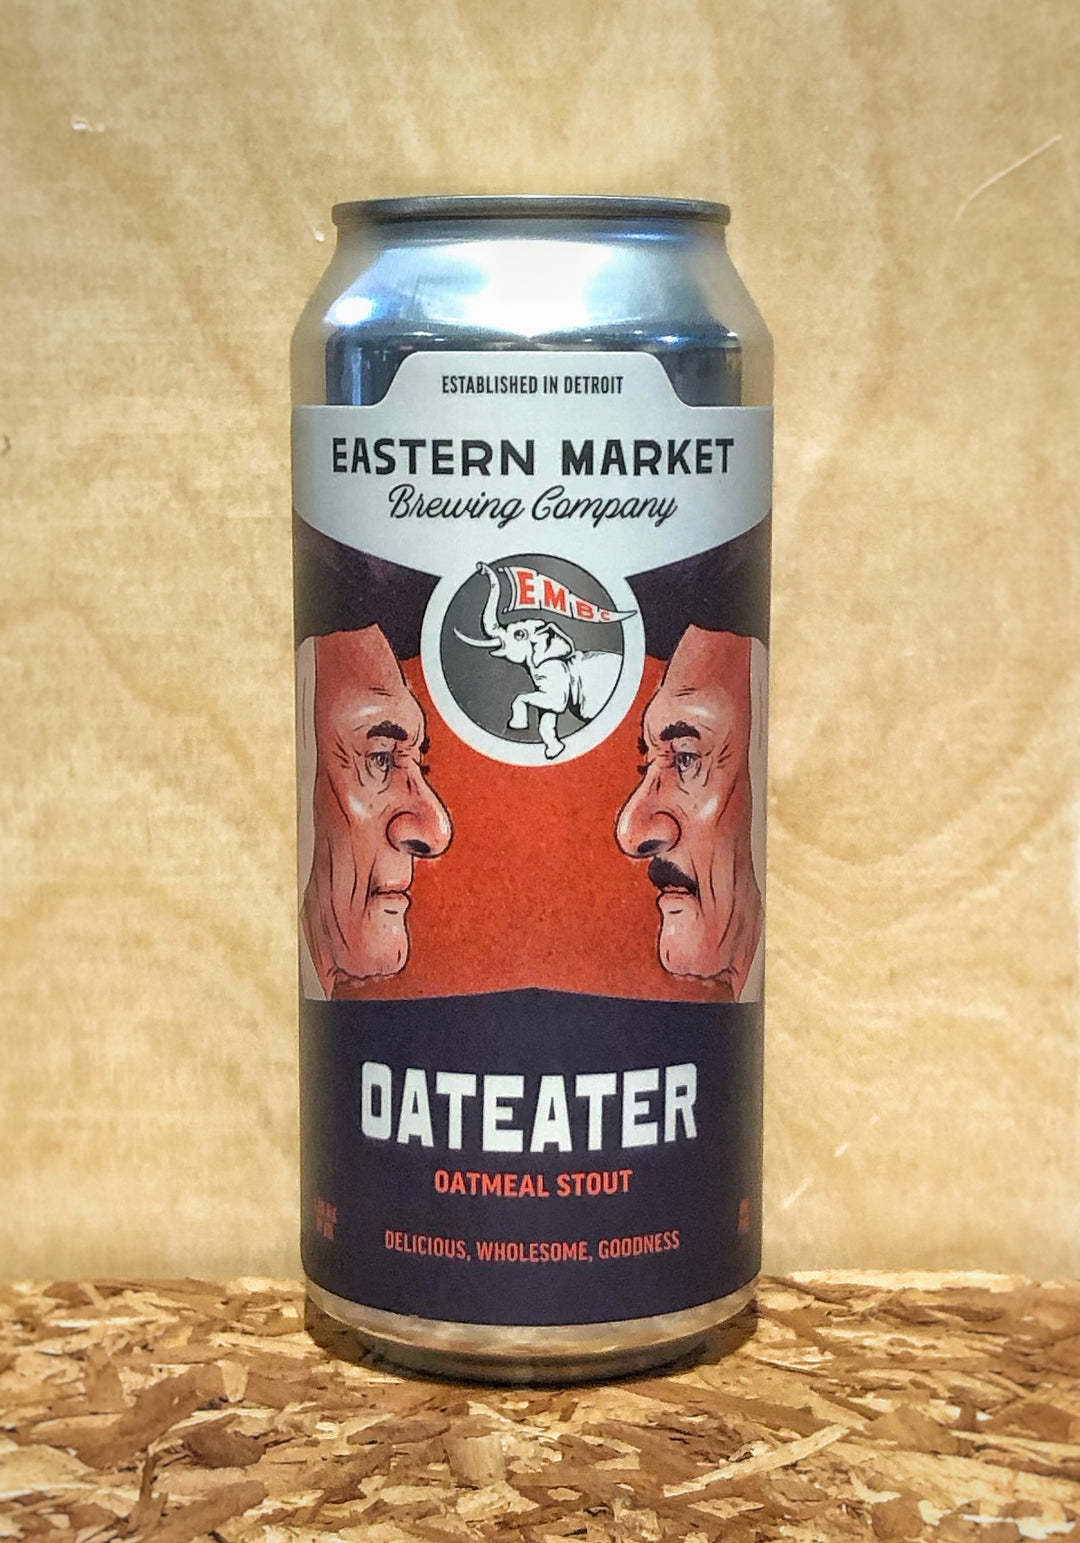 Eastern Market Brewing Co. 'Oateater' Oatmeal Stout (Detroit, MI)